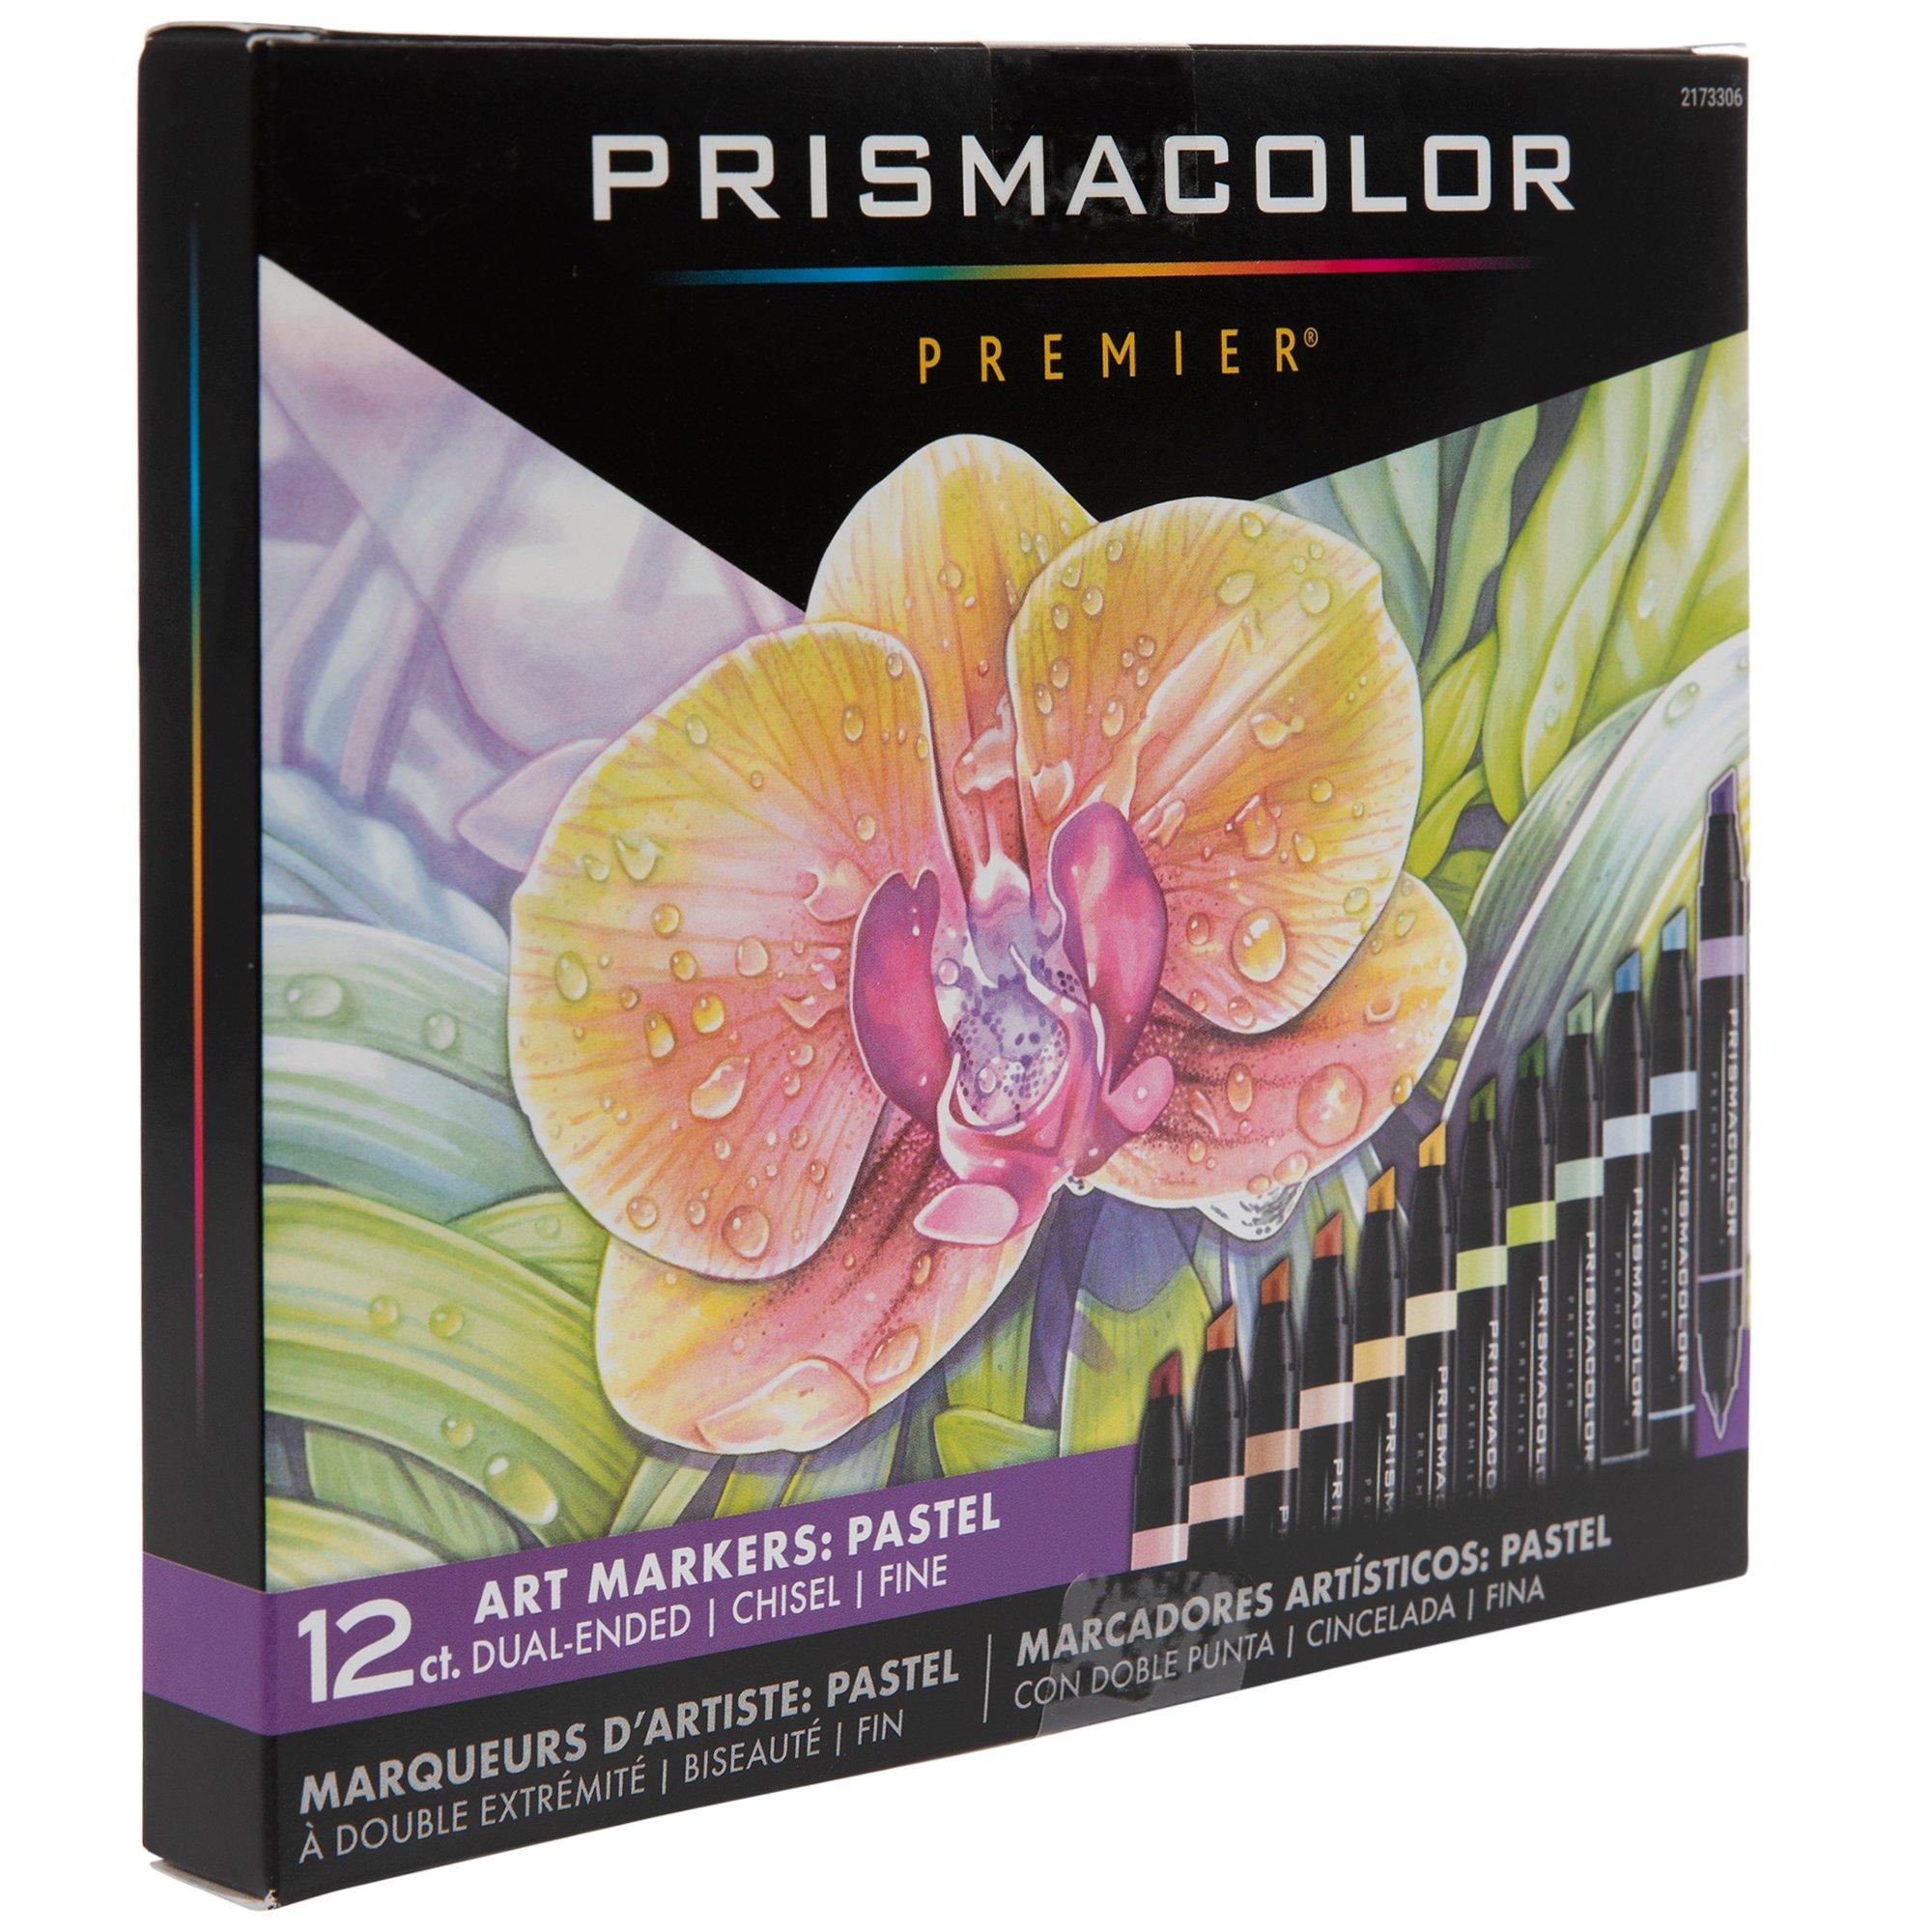 Prismacolor Premier Dual-Ended Art Marker Set - Cool Grays, Set of 12